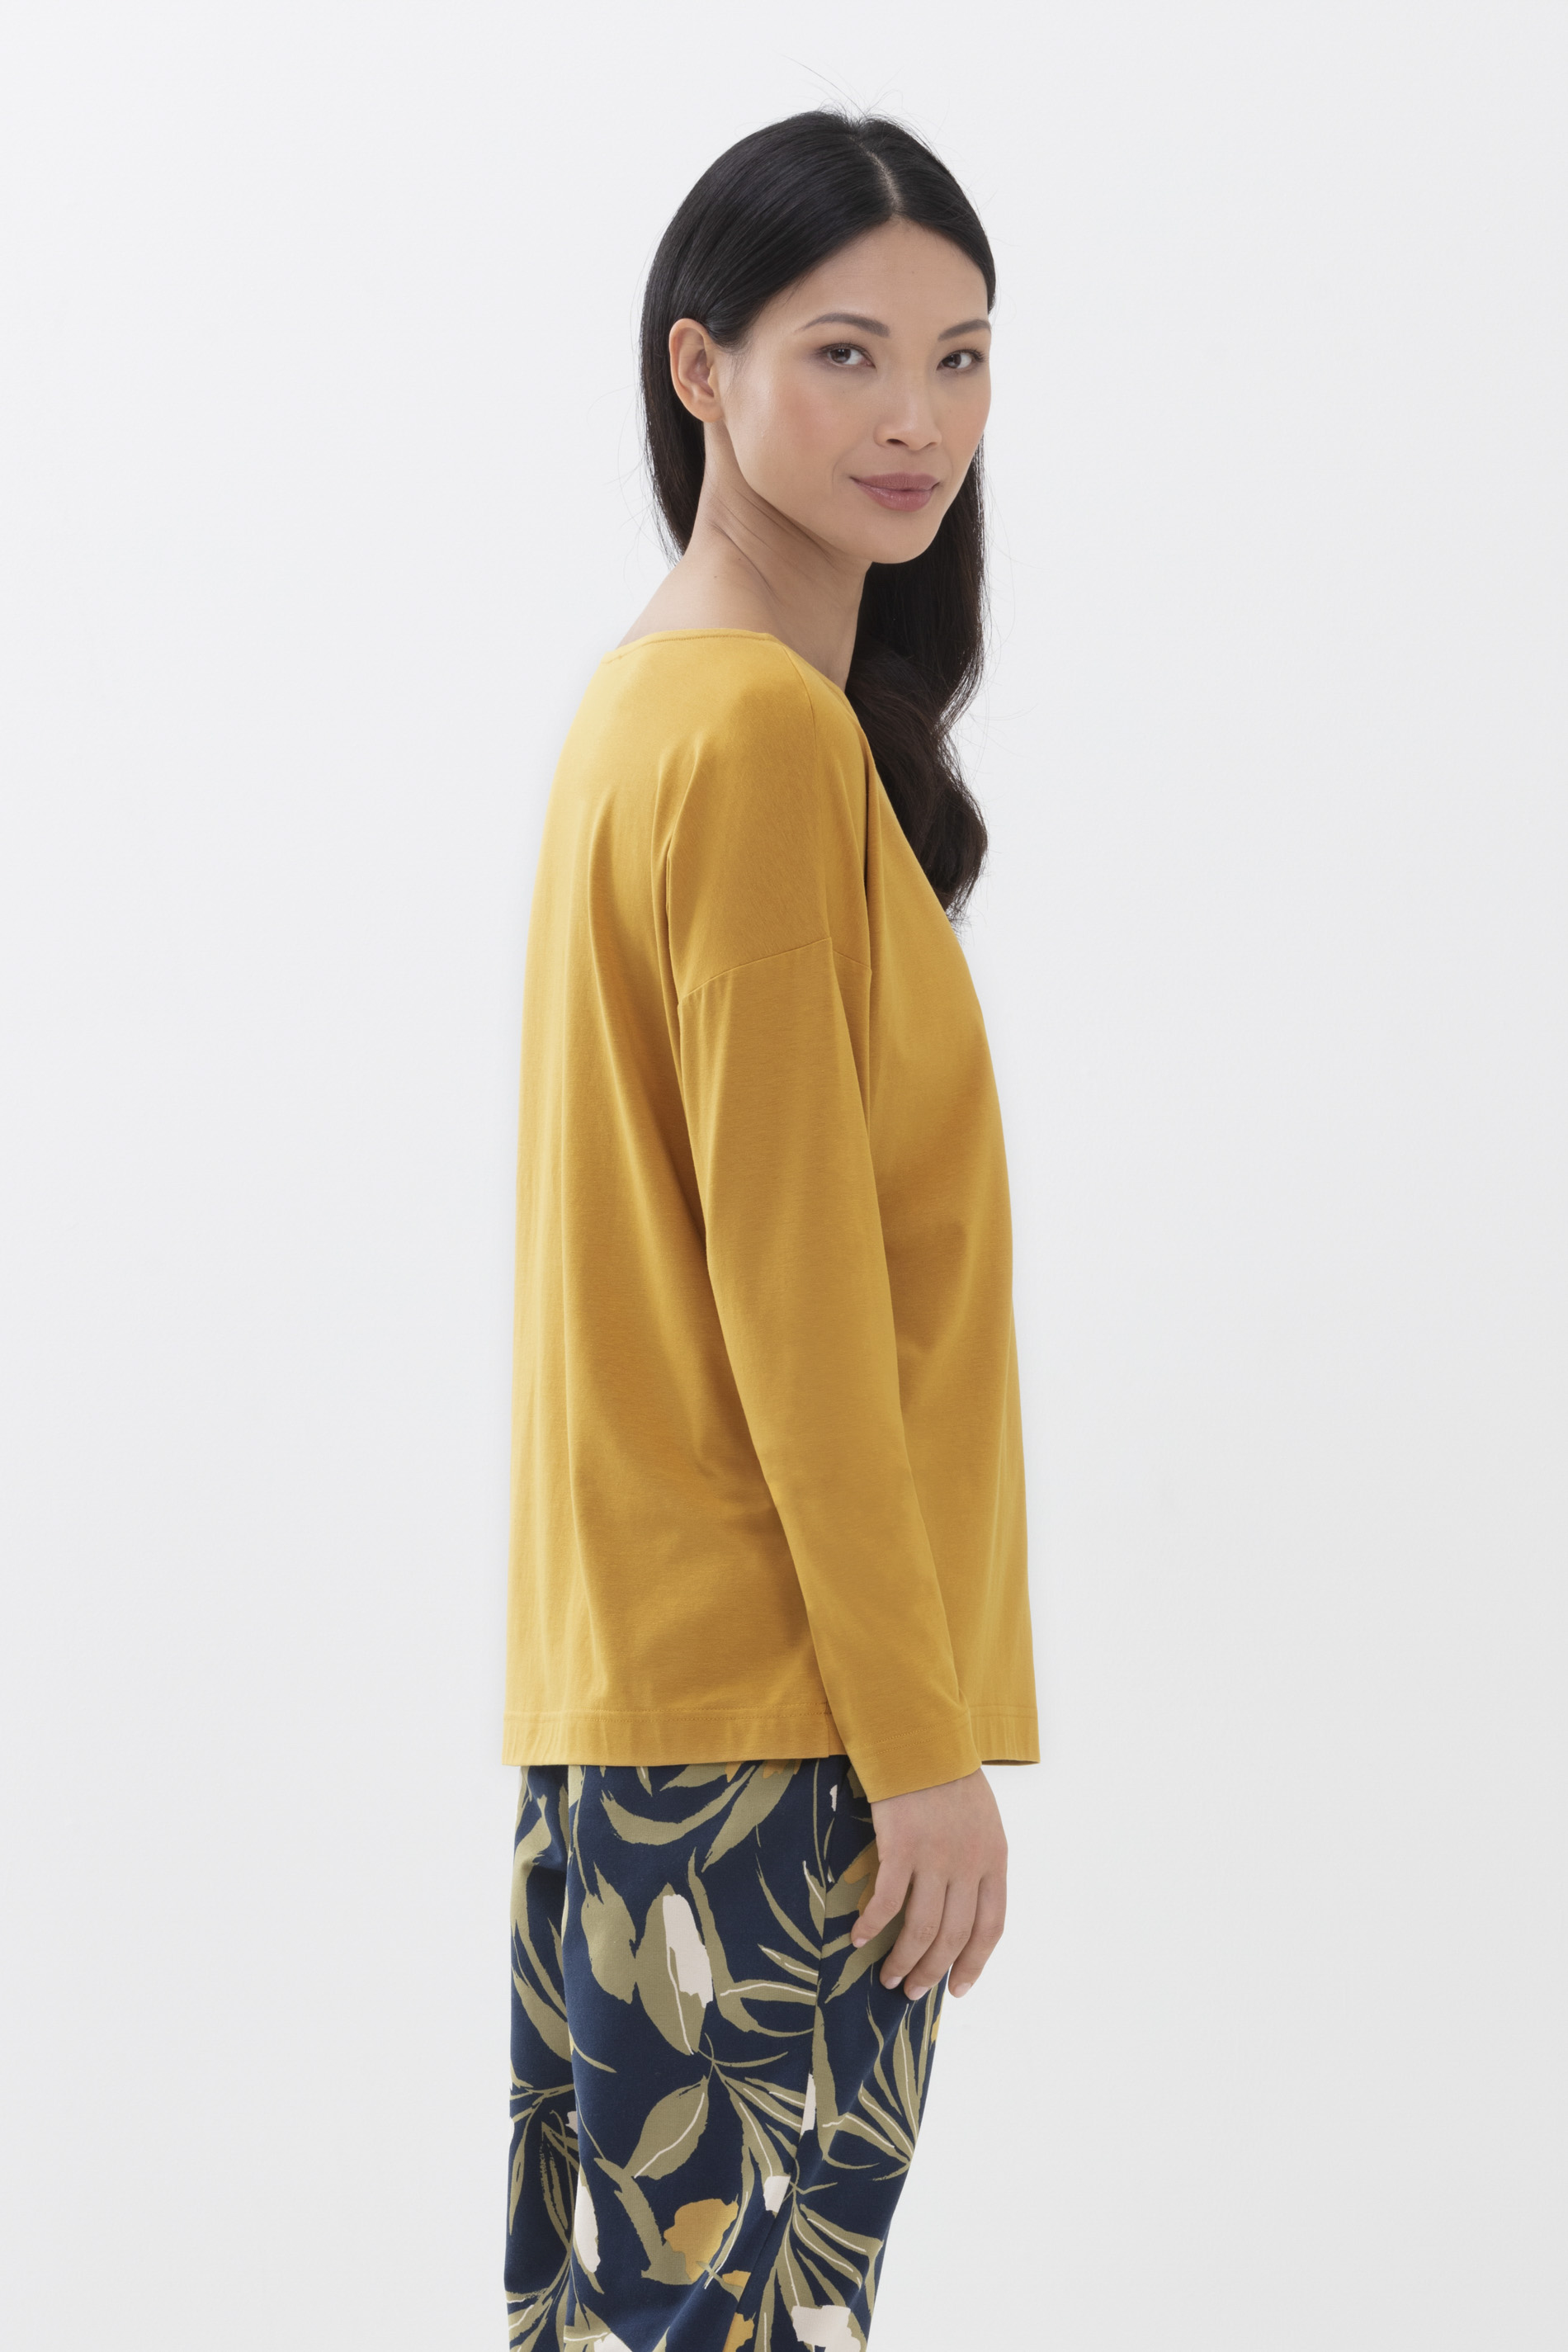 Long-sleeved shirt Wintergold Serie Aya Detail View 02 | mey®